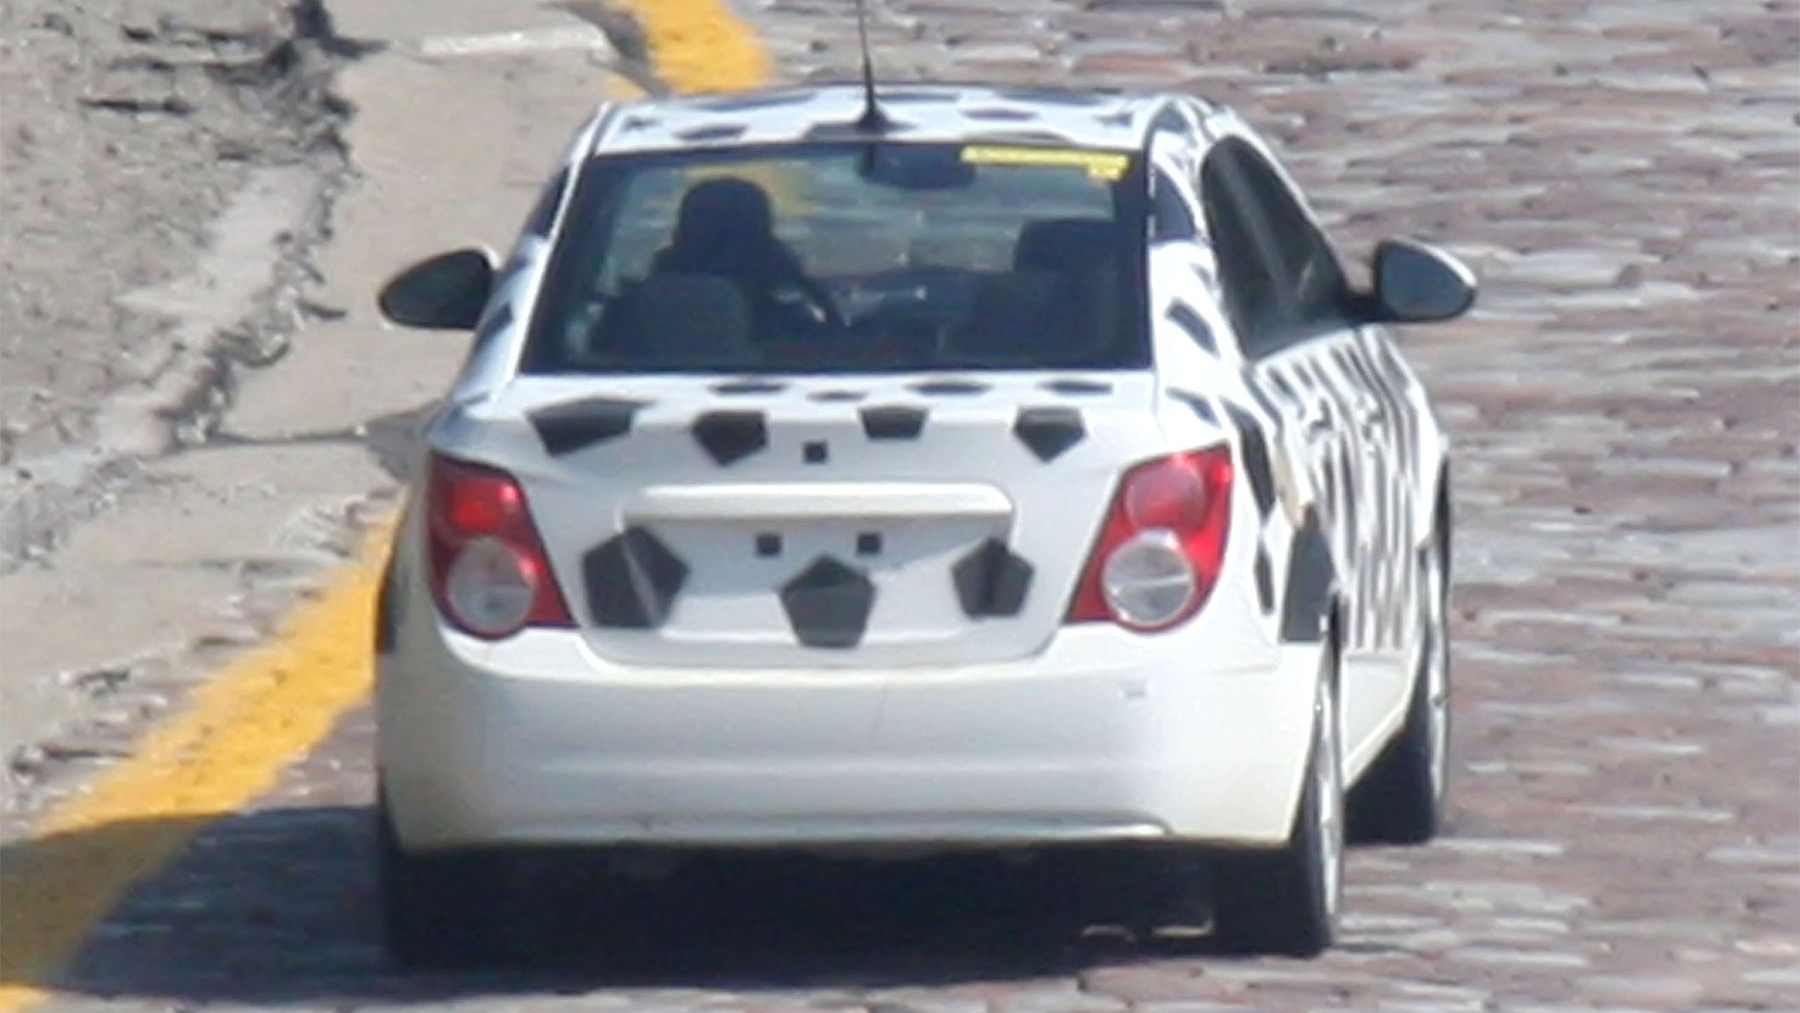 2012 Chevrolet Aveo Sedan spy shots